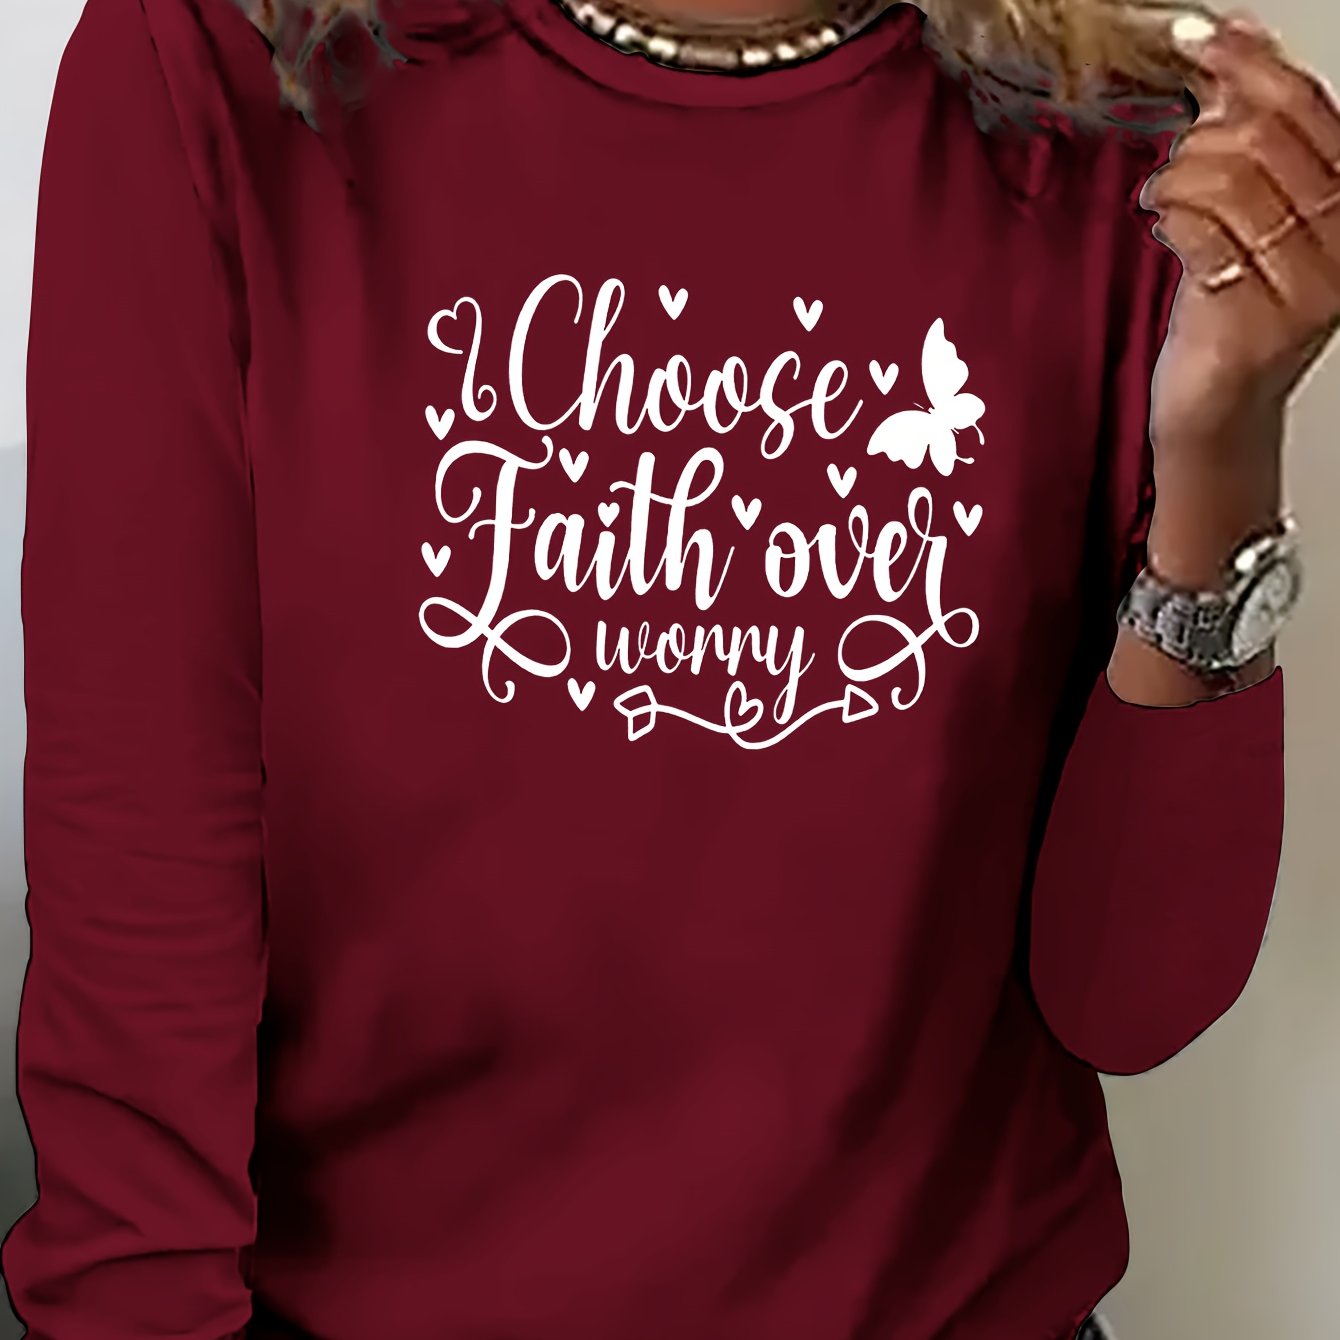 Choose Faith Over Worry claimedbygoddesigns